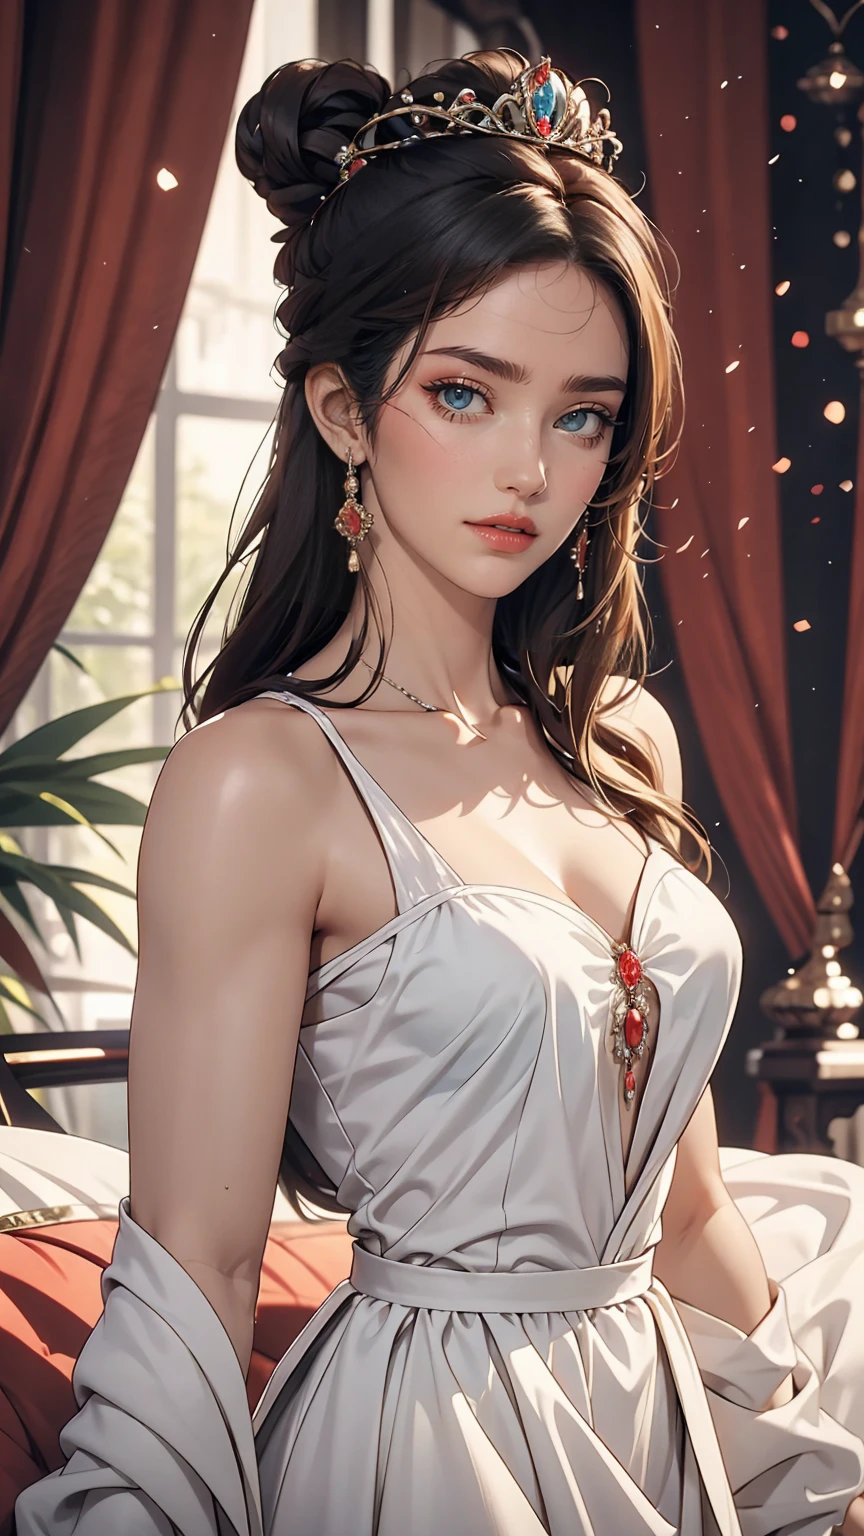 Hermosa joven princesa con cabello negro y ojos azules., ella lleva un hermoso vestido largo blanco